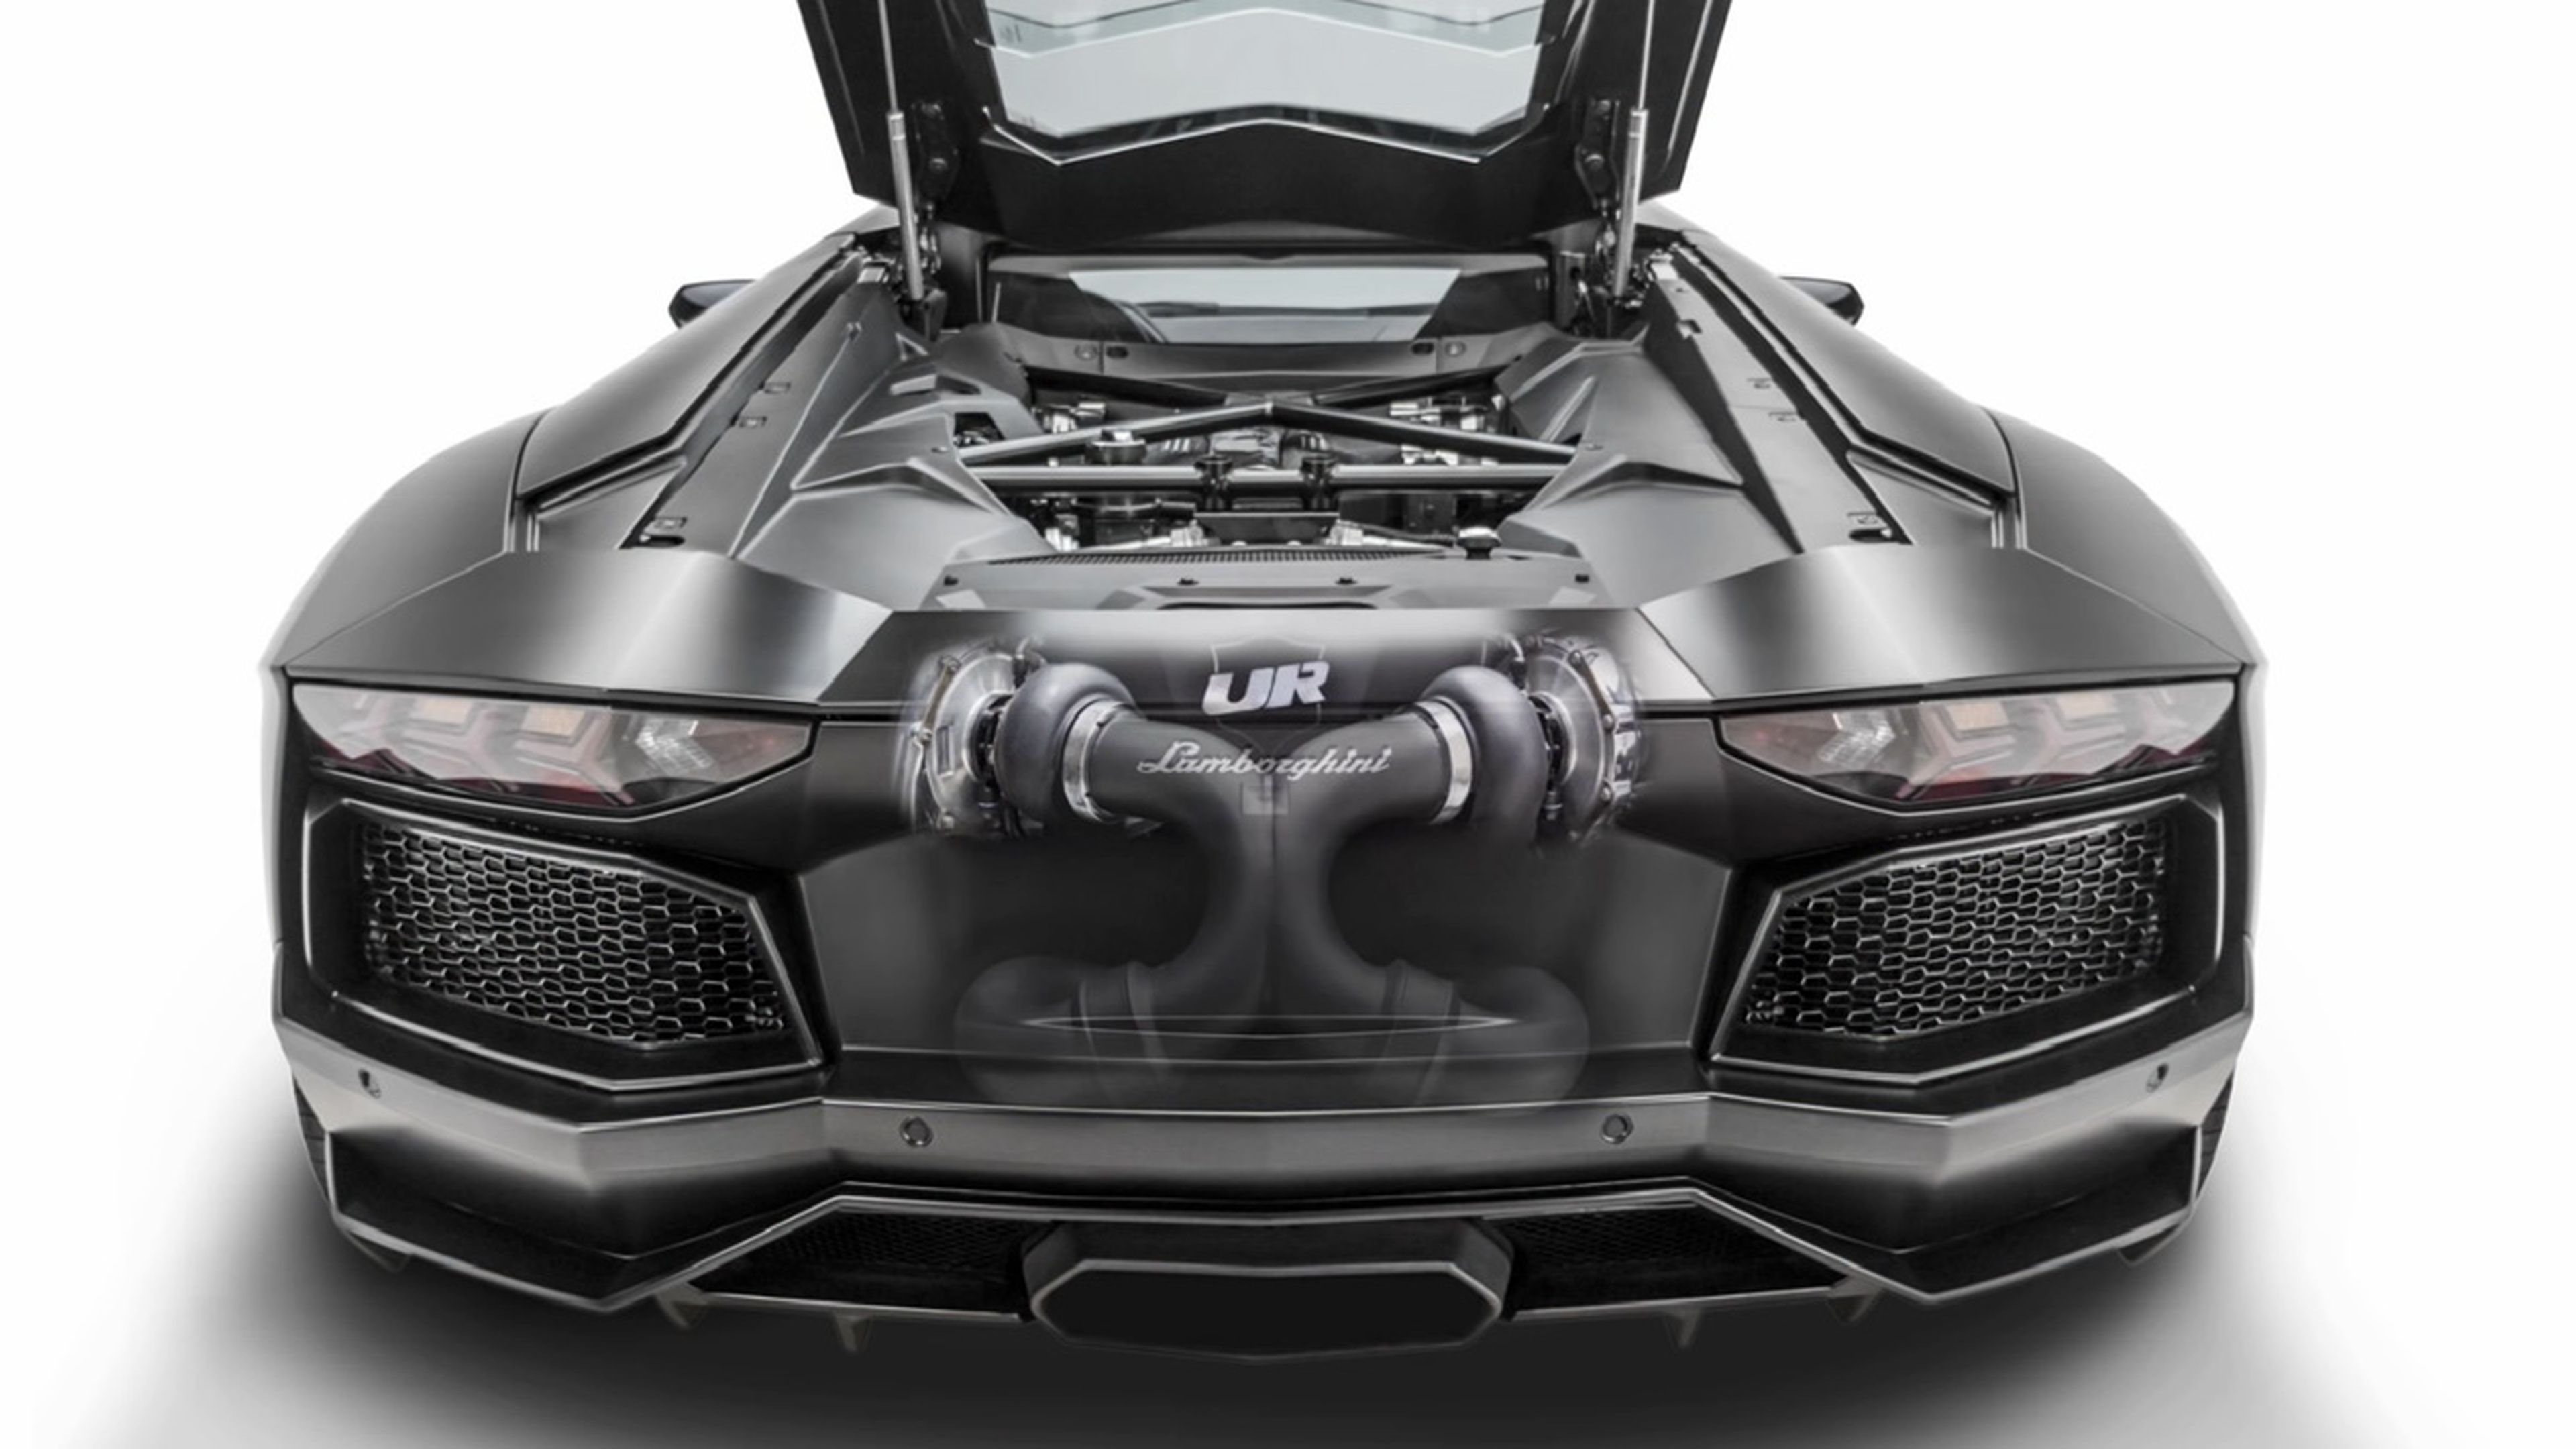 ¿Es este el Lamborghini Aventador más rápido del mundo?